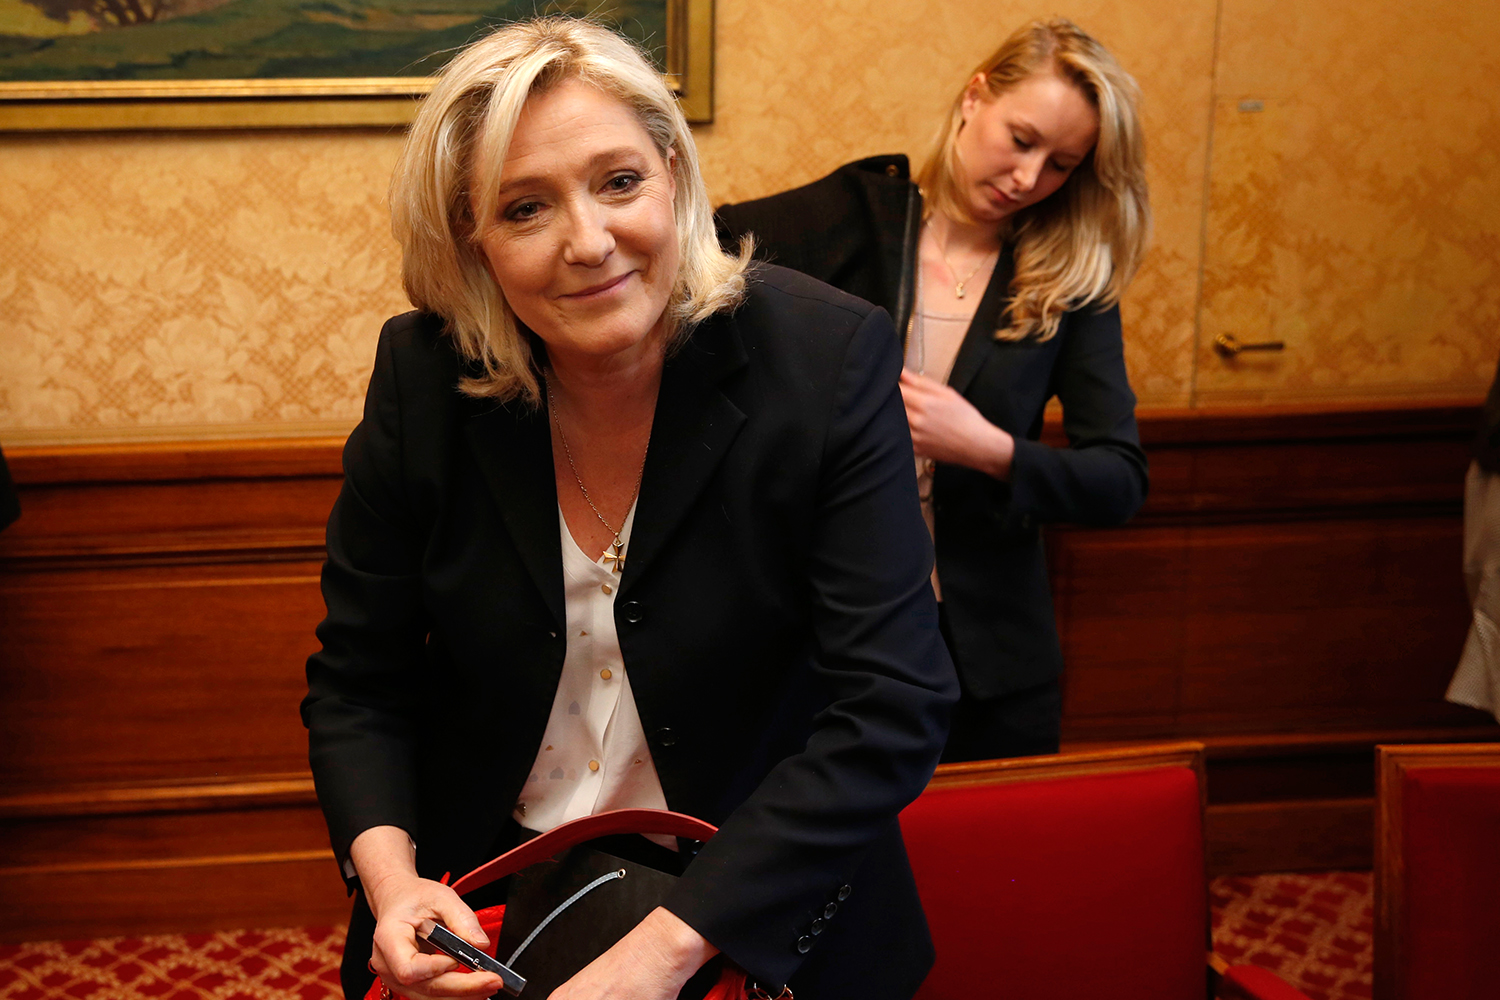 El 45% de los jóvenes quiere a Le Pen: la encuesta que ha desatado la polémica en Francia